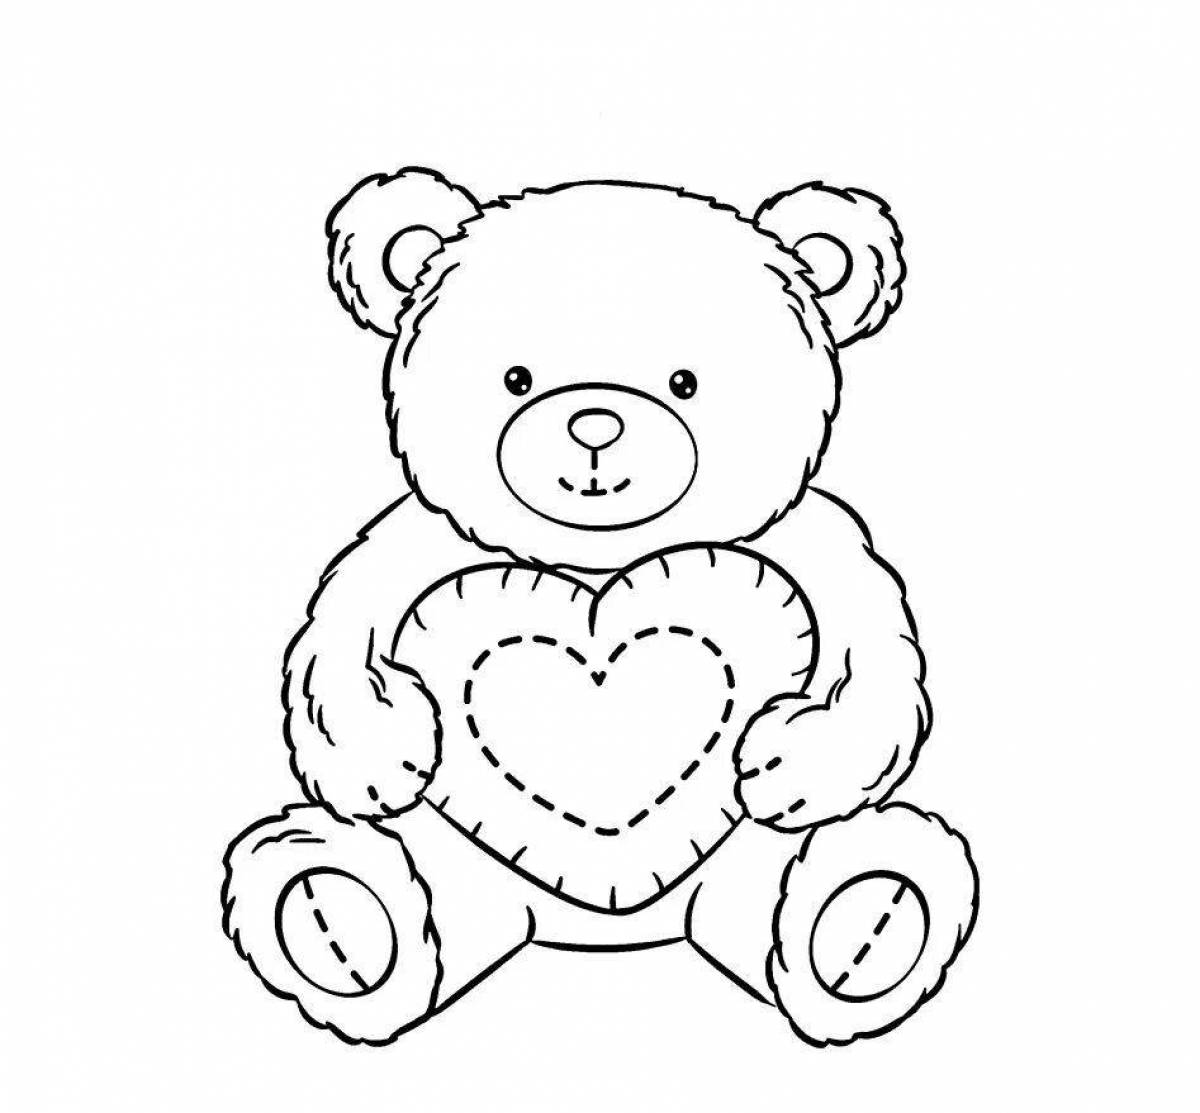 Раскраска ухмыляющийся медведь с сердечком